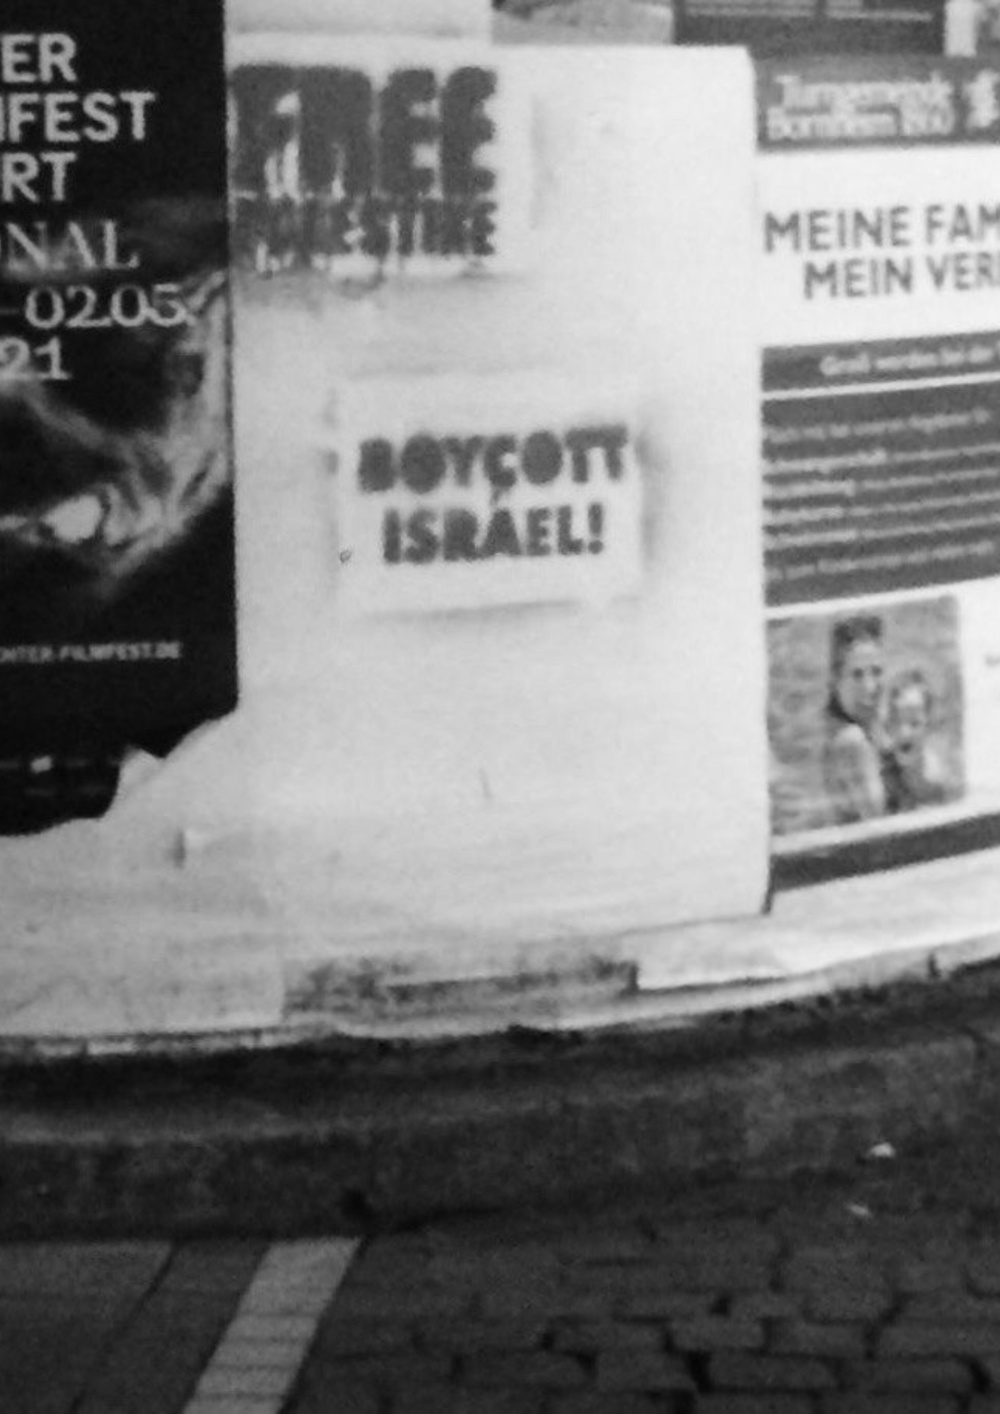 Das Bild zeigt eine Litfaßsäule mit den Graffitis "Free Palestine" und "Boycott Israel!"